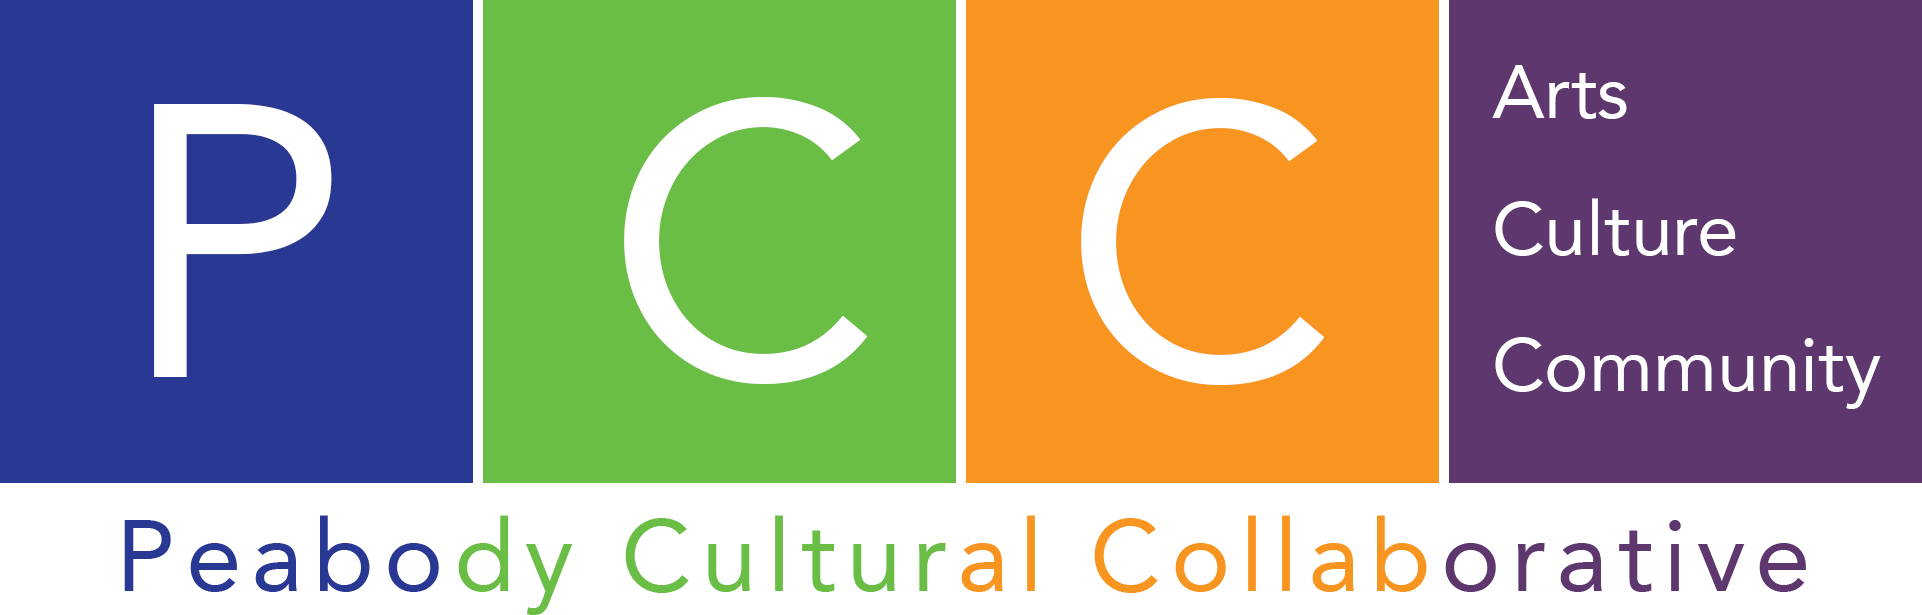 Peabody Cultural Collaborative